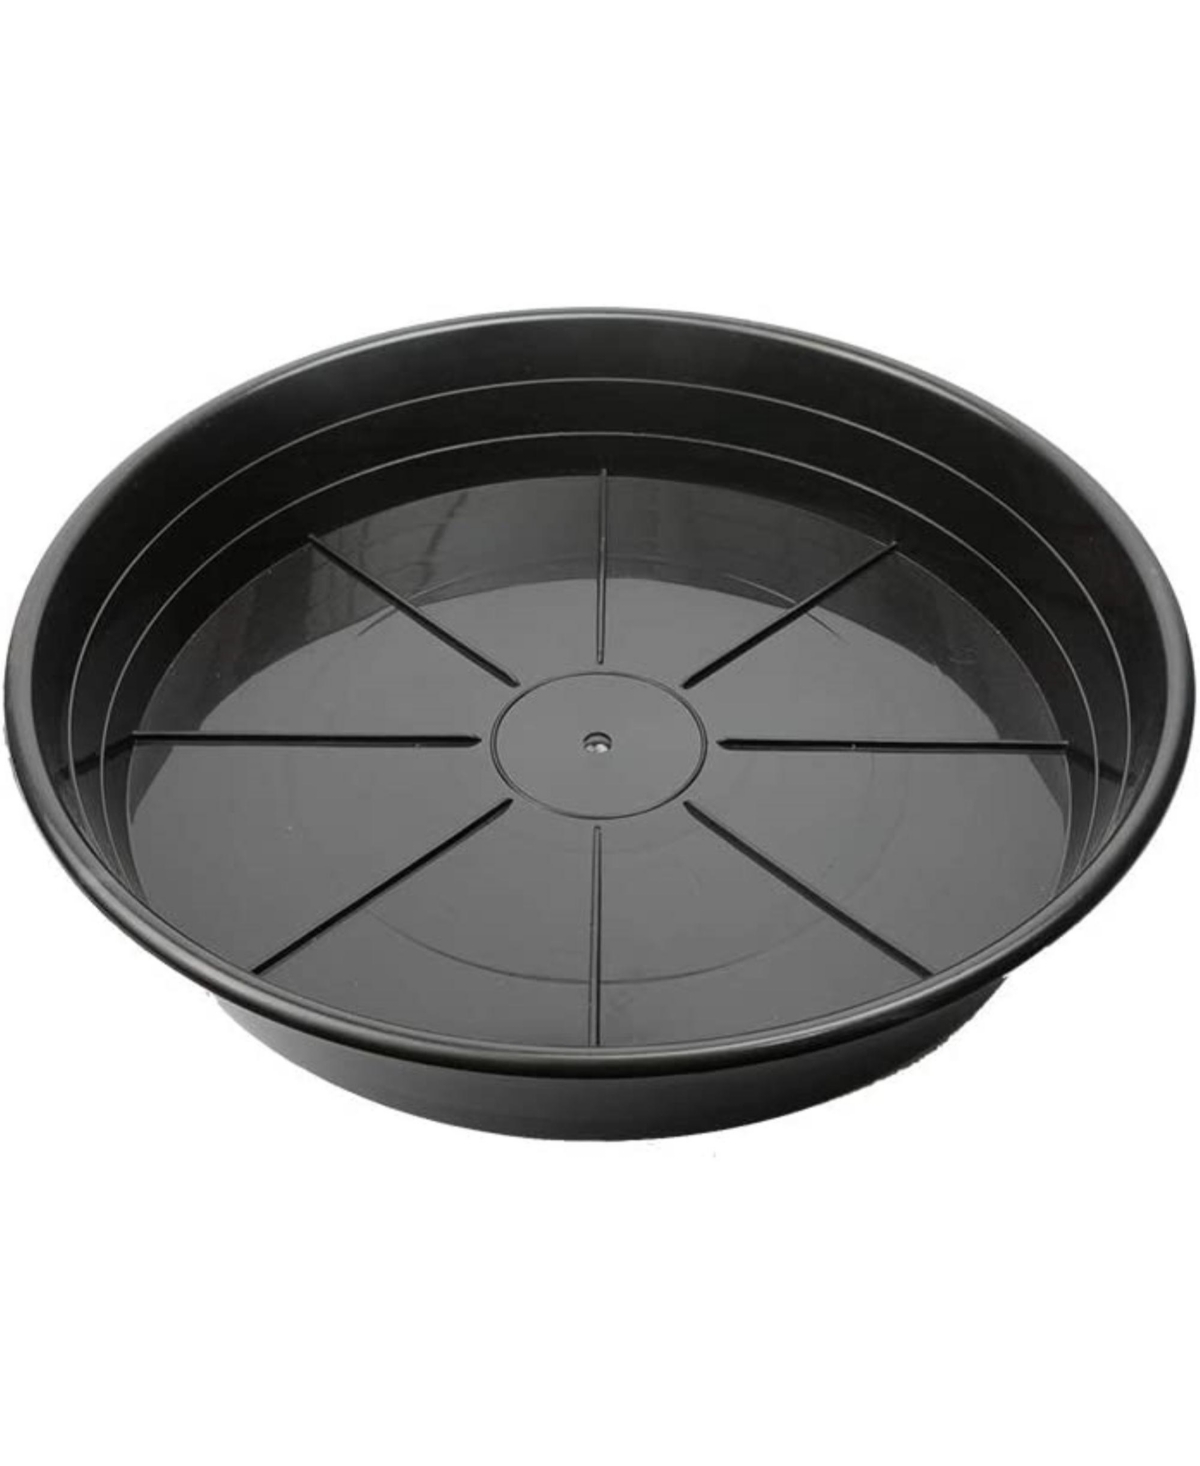 Uv-Resistant Premium Plastic Plant Saucer, 12 Inches Inside Diameter - Black